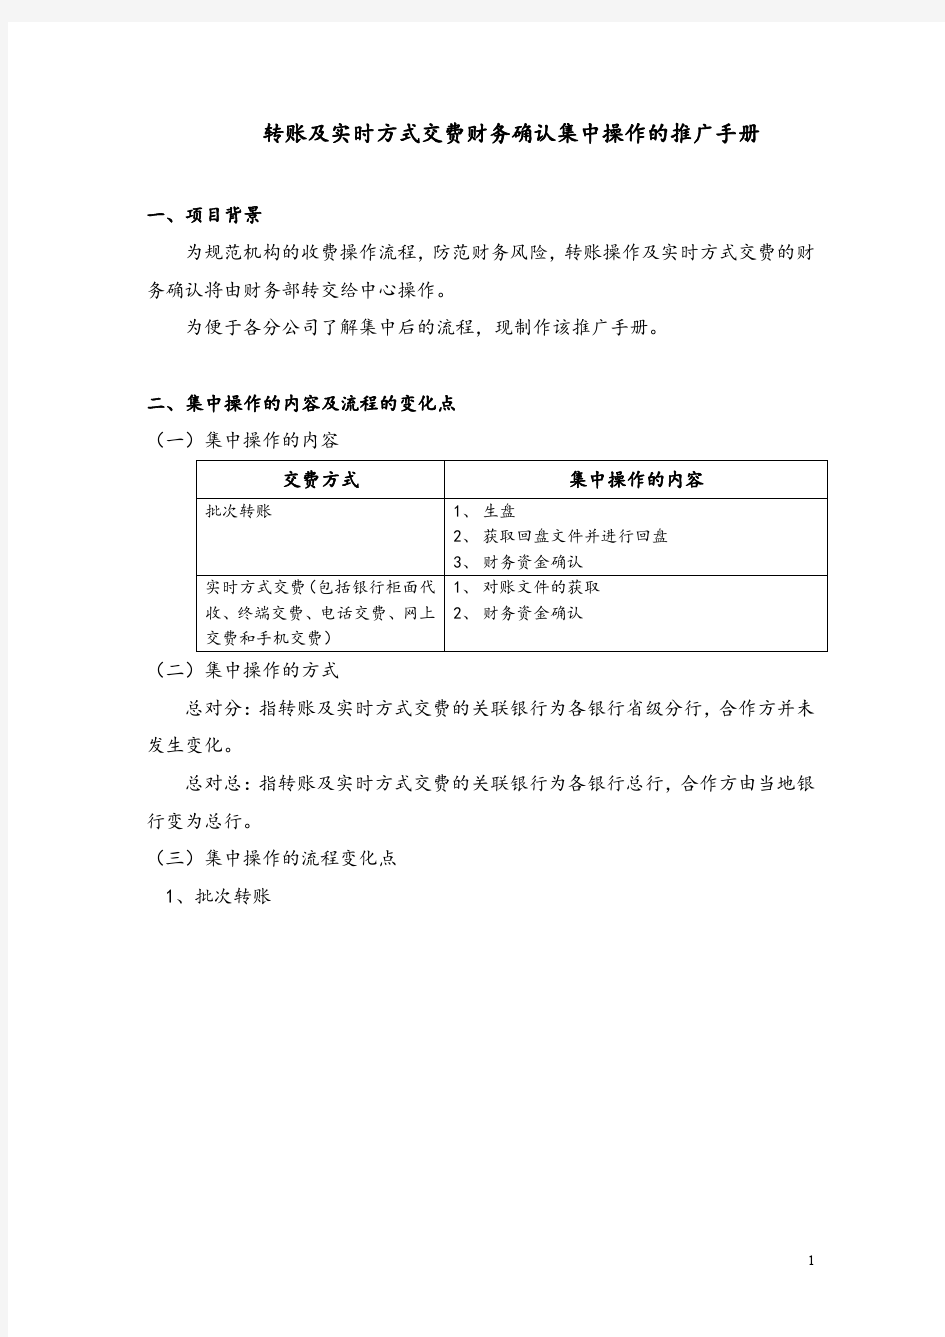 中国平安保险业务员注意事项  银行集中转账操作手册